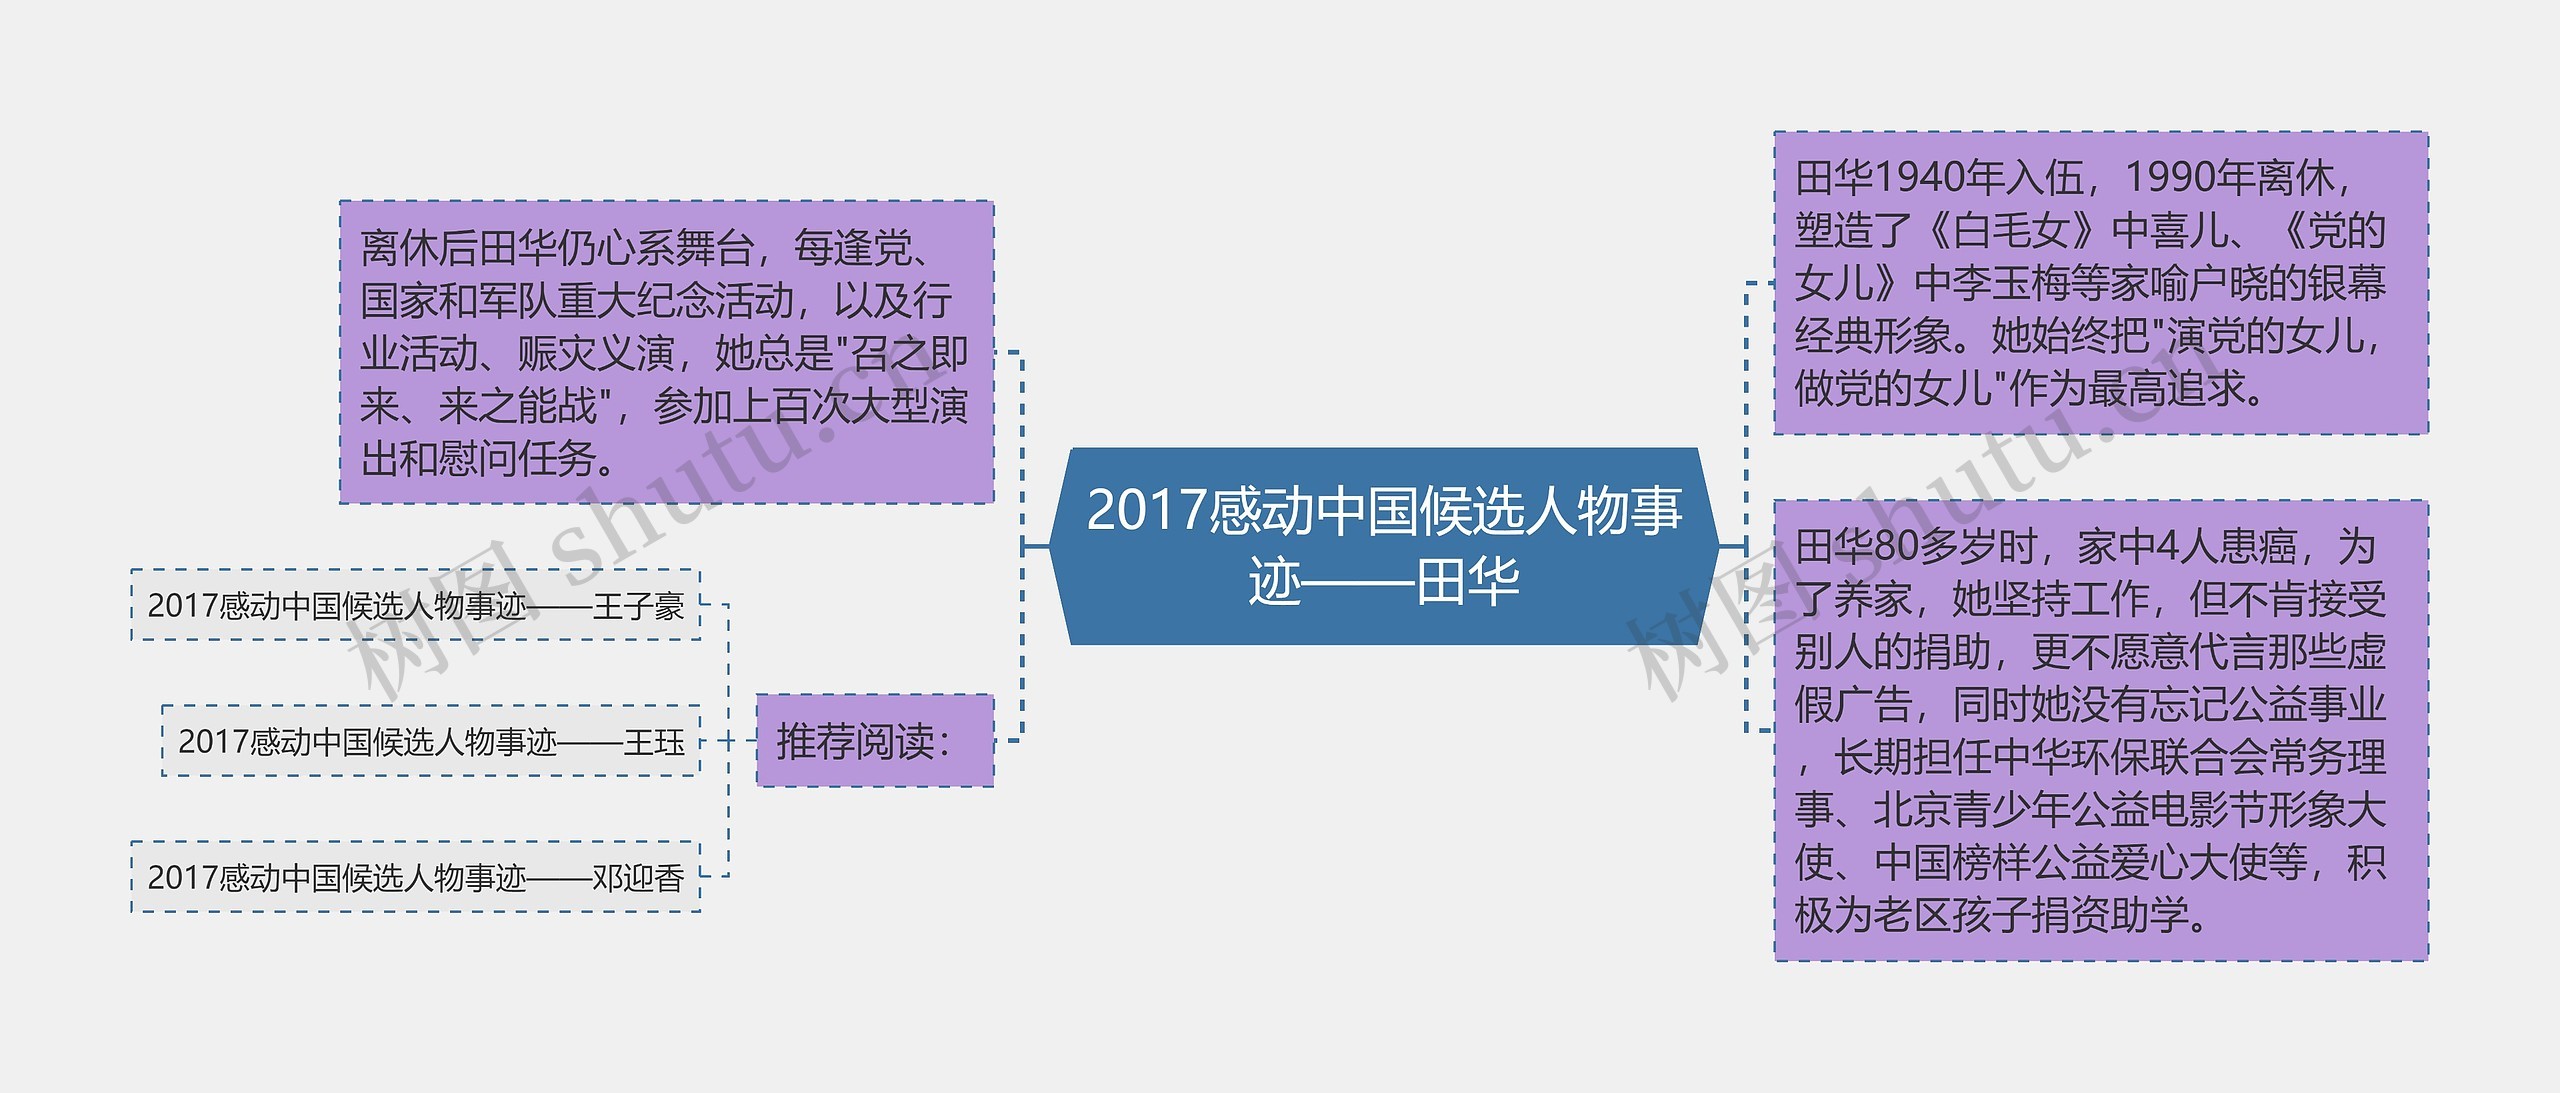 2017感动中国候选人物事迹——田华思维导图